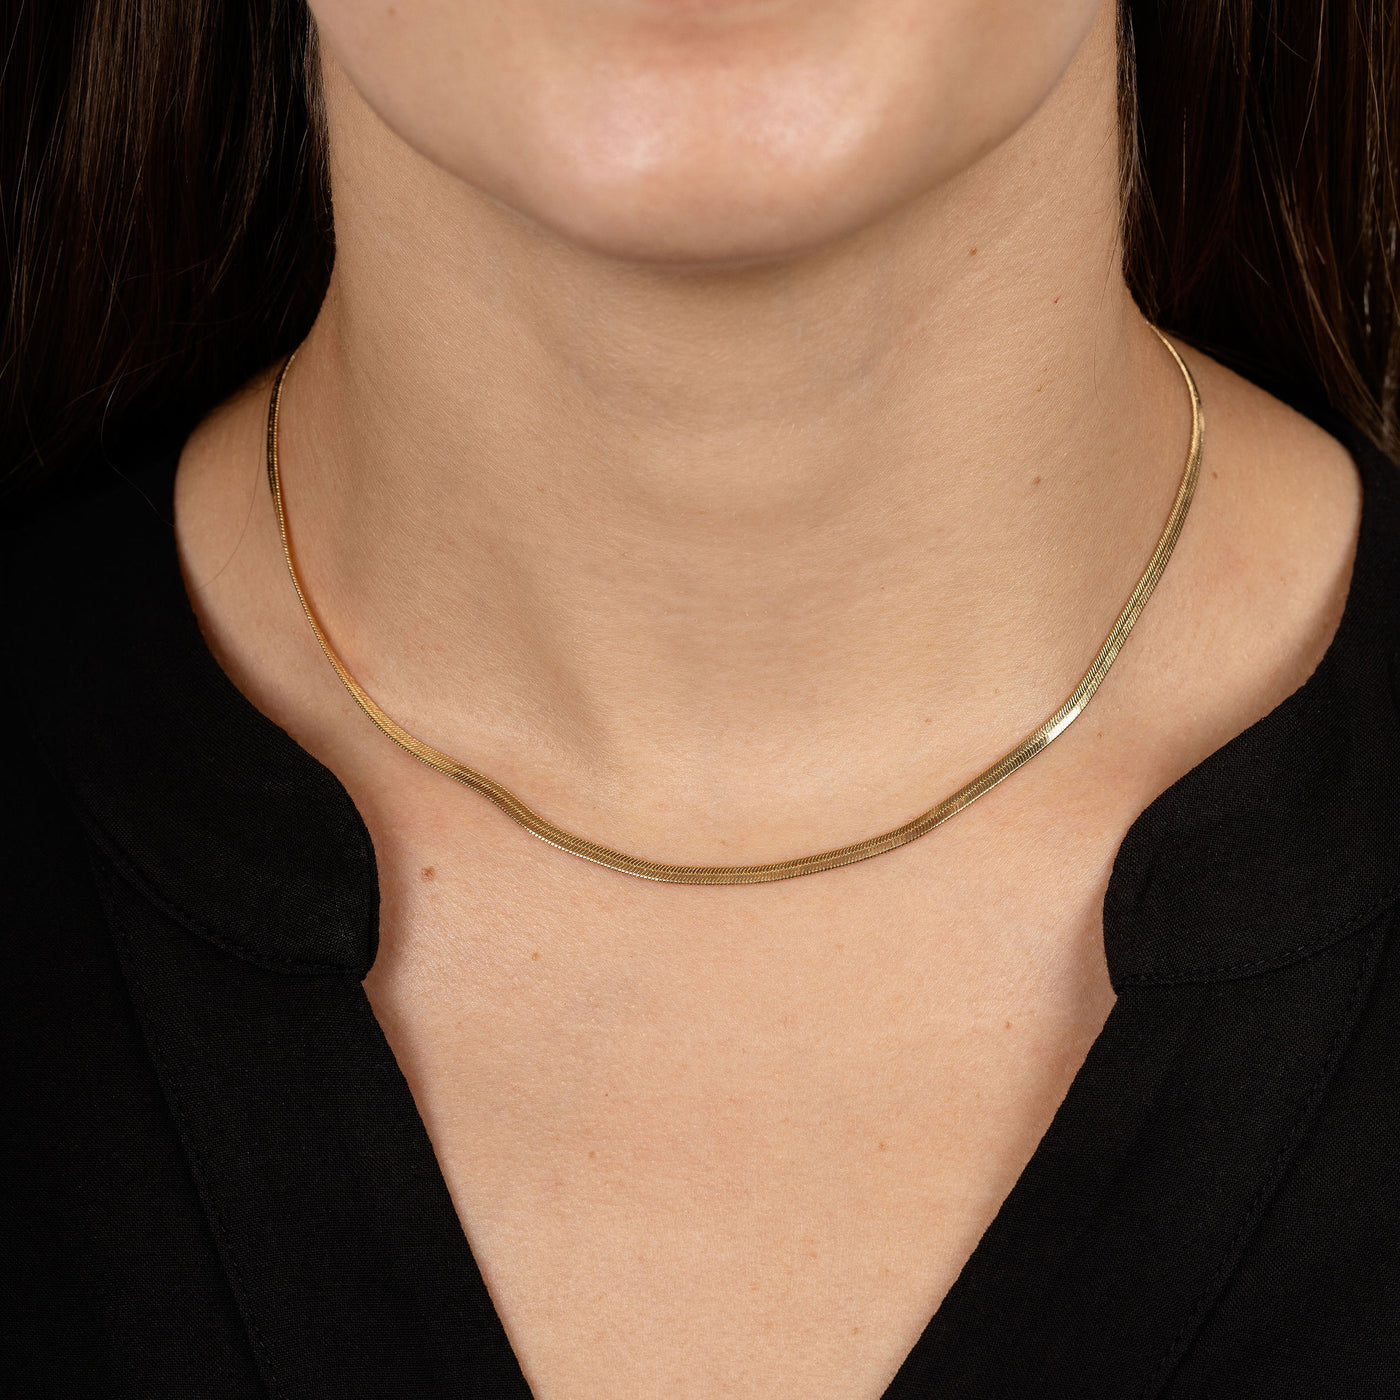 DAINTY Women 925 Sterling Silver 1.7 mm Herringbone Chain Choker Necklace  16-18